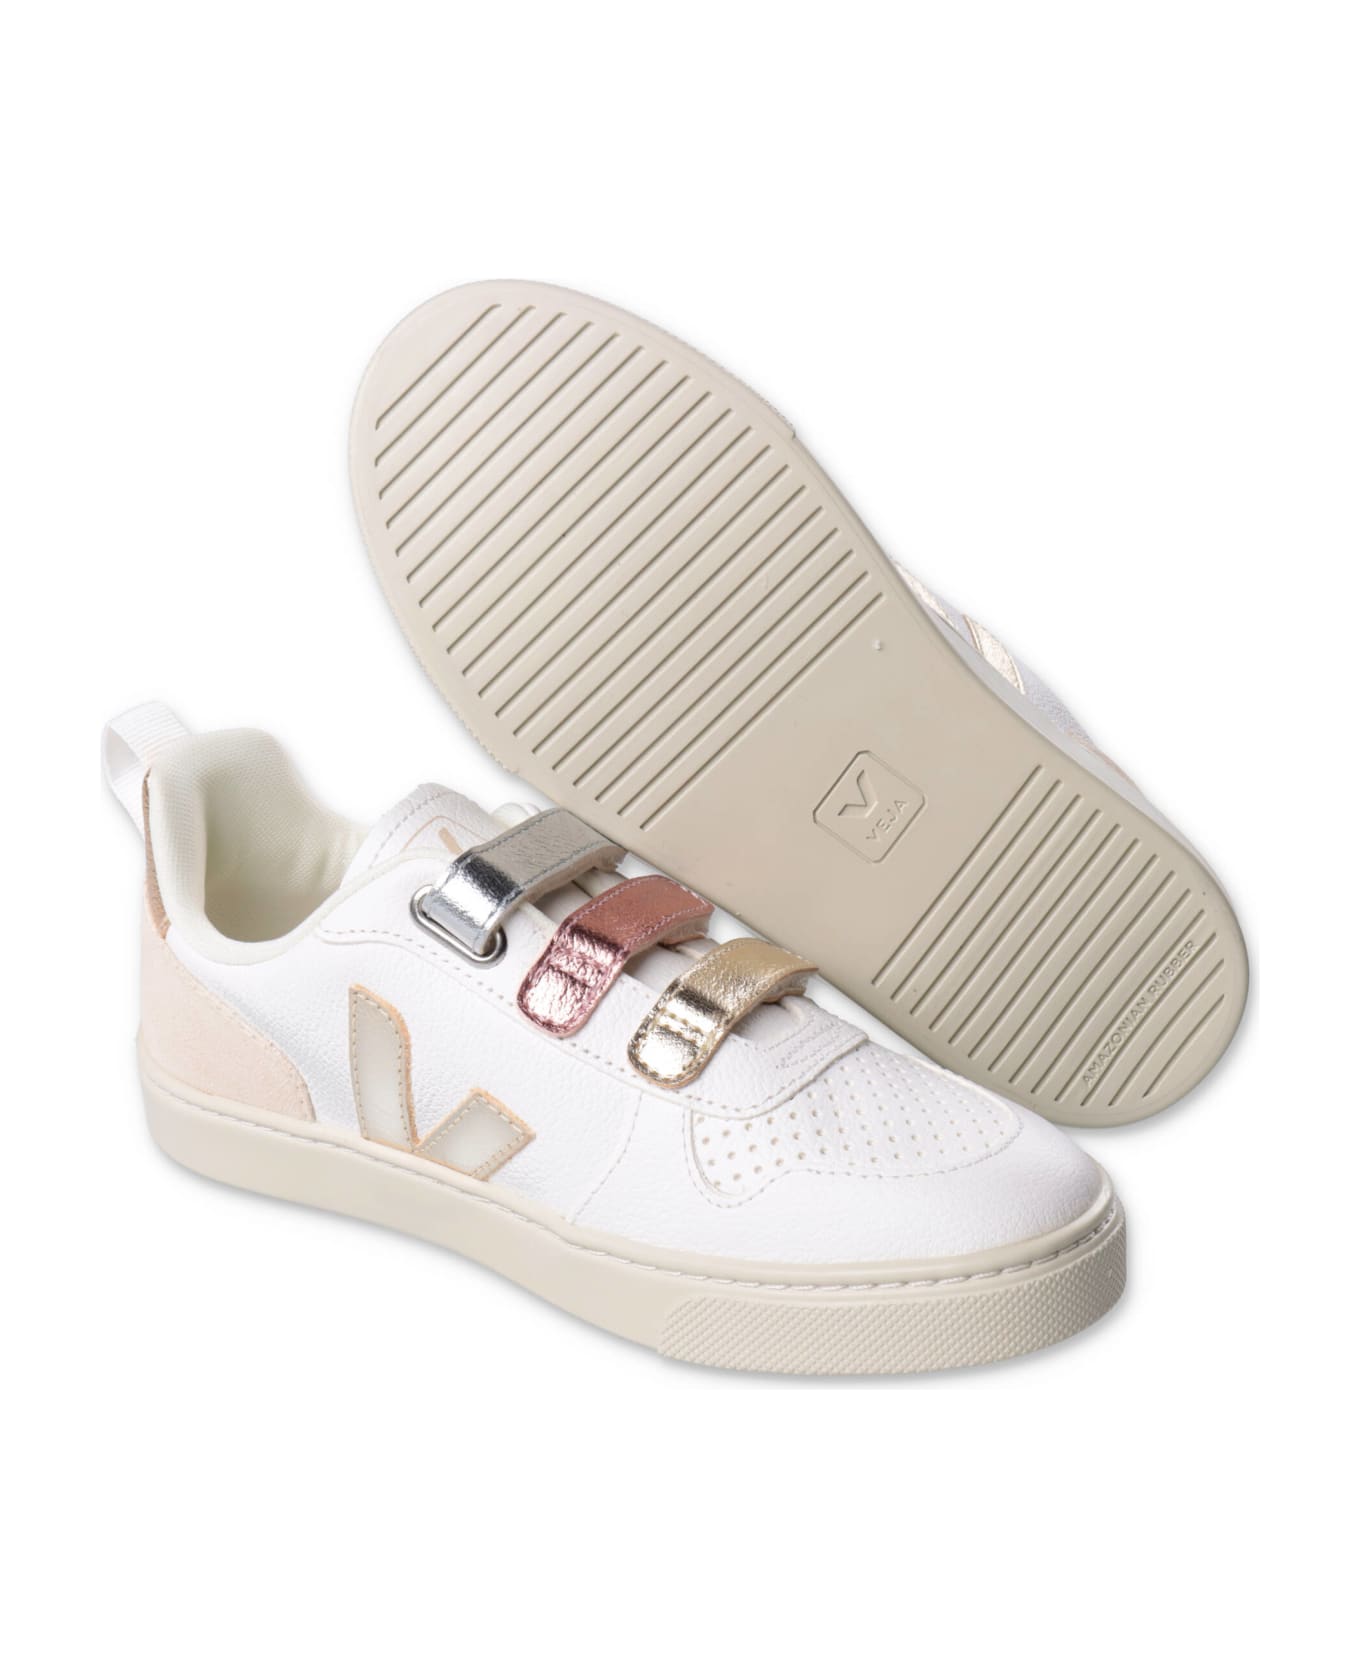 Veja Sneakers Bianche In Pelle Con Velcro Bambina - Bianco シューズ